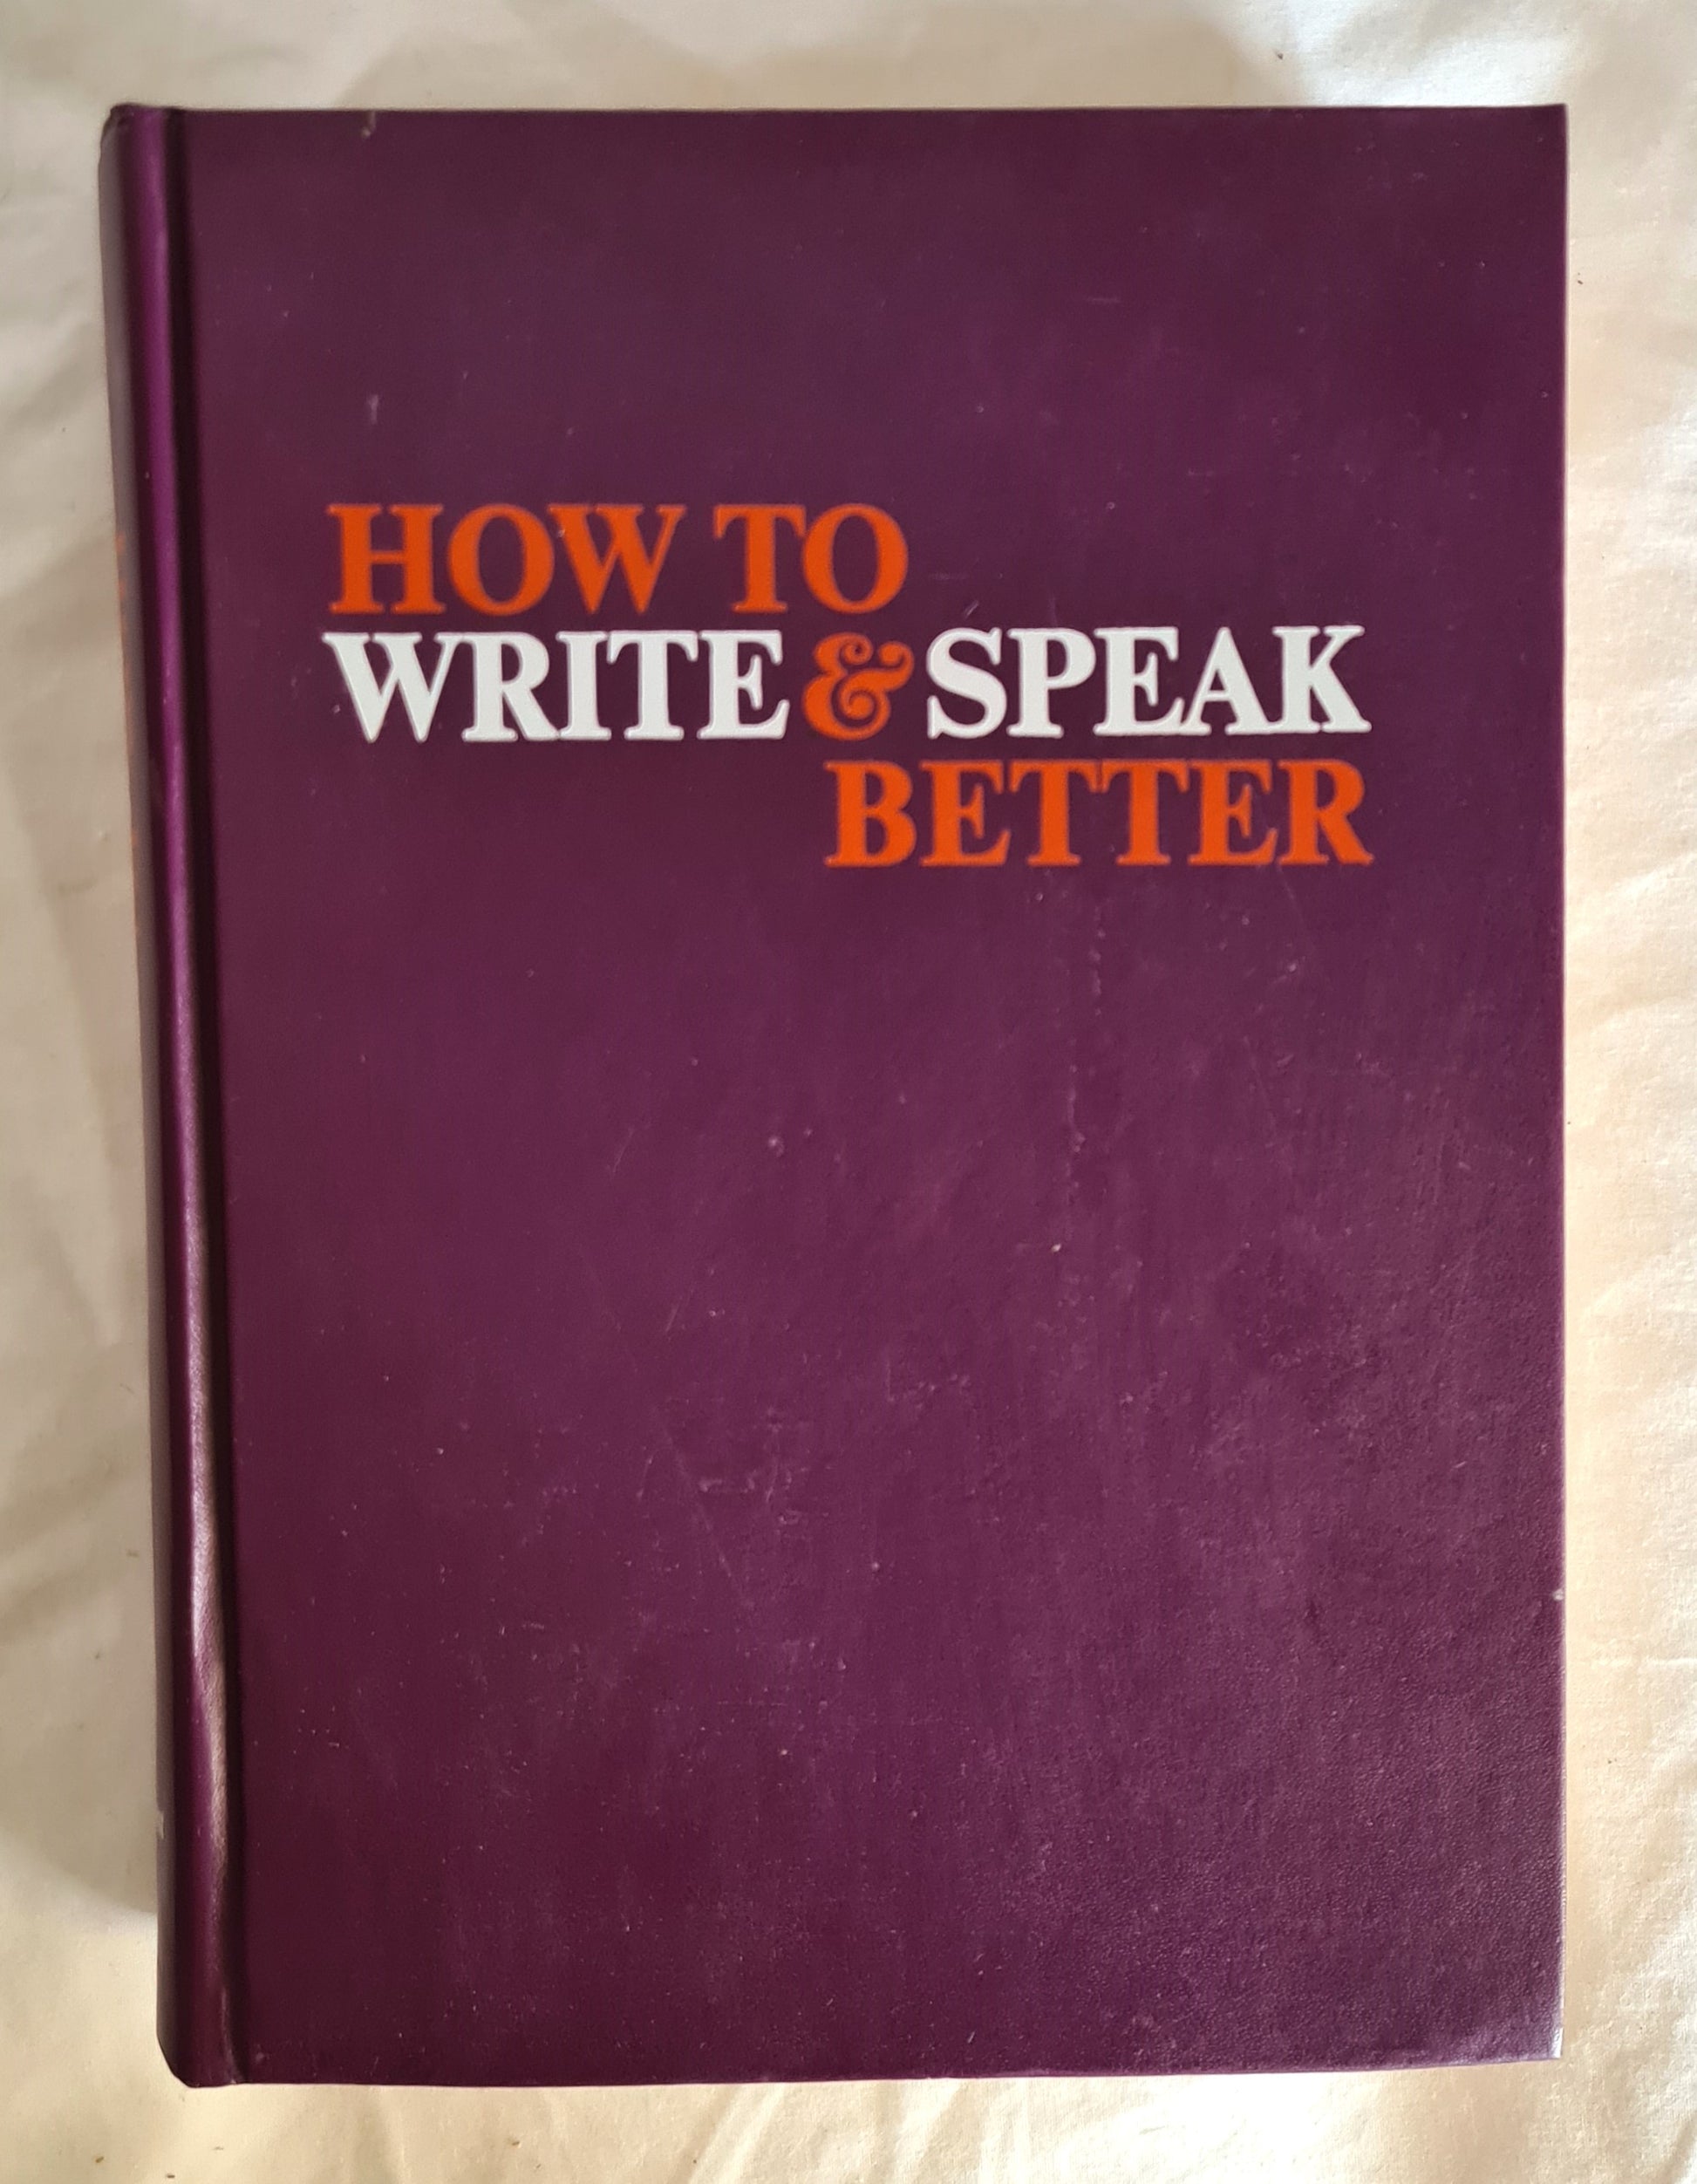 How To Write & Speak Better  by John S. Gunn (Editor)